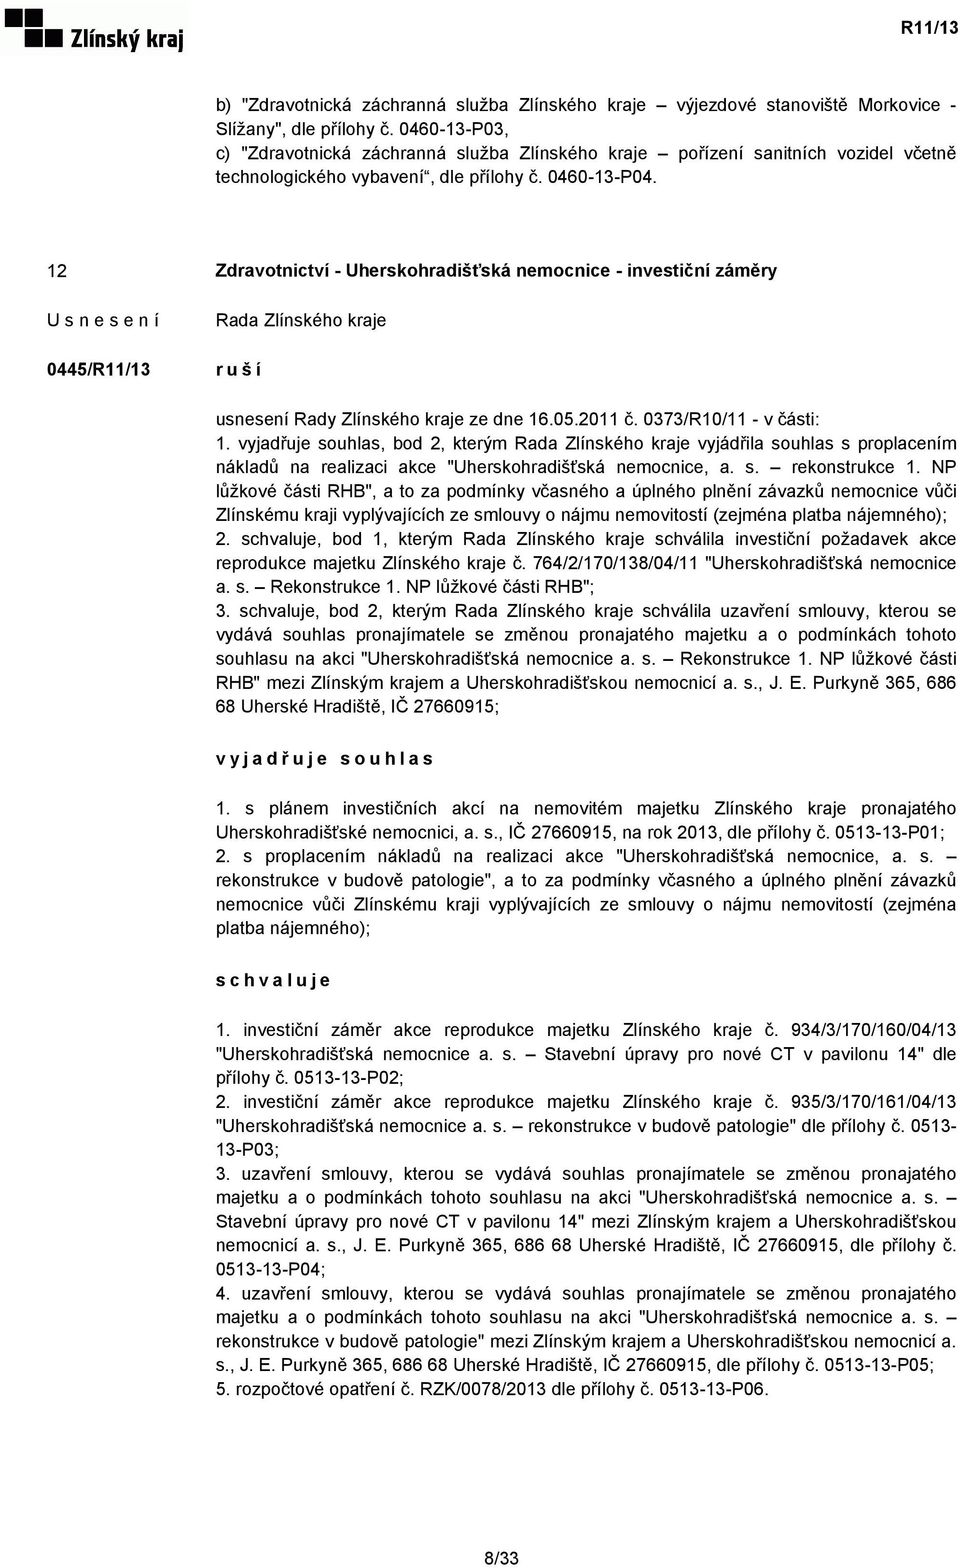 12 Zdravotnictví - Uherskohradišťská nemocnice - investiční záměry 0445/R11/13 ruší usnesení Rady Zlínského kraje ze dne 16.05.2011 č. 0373/R10/11 - v části: 1.